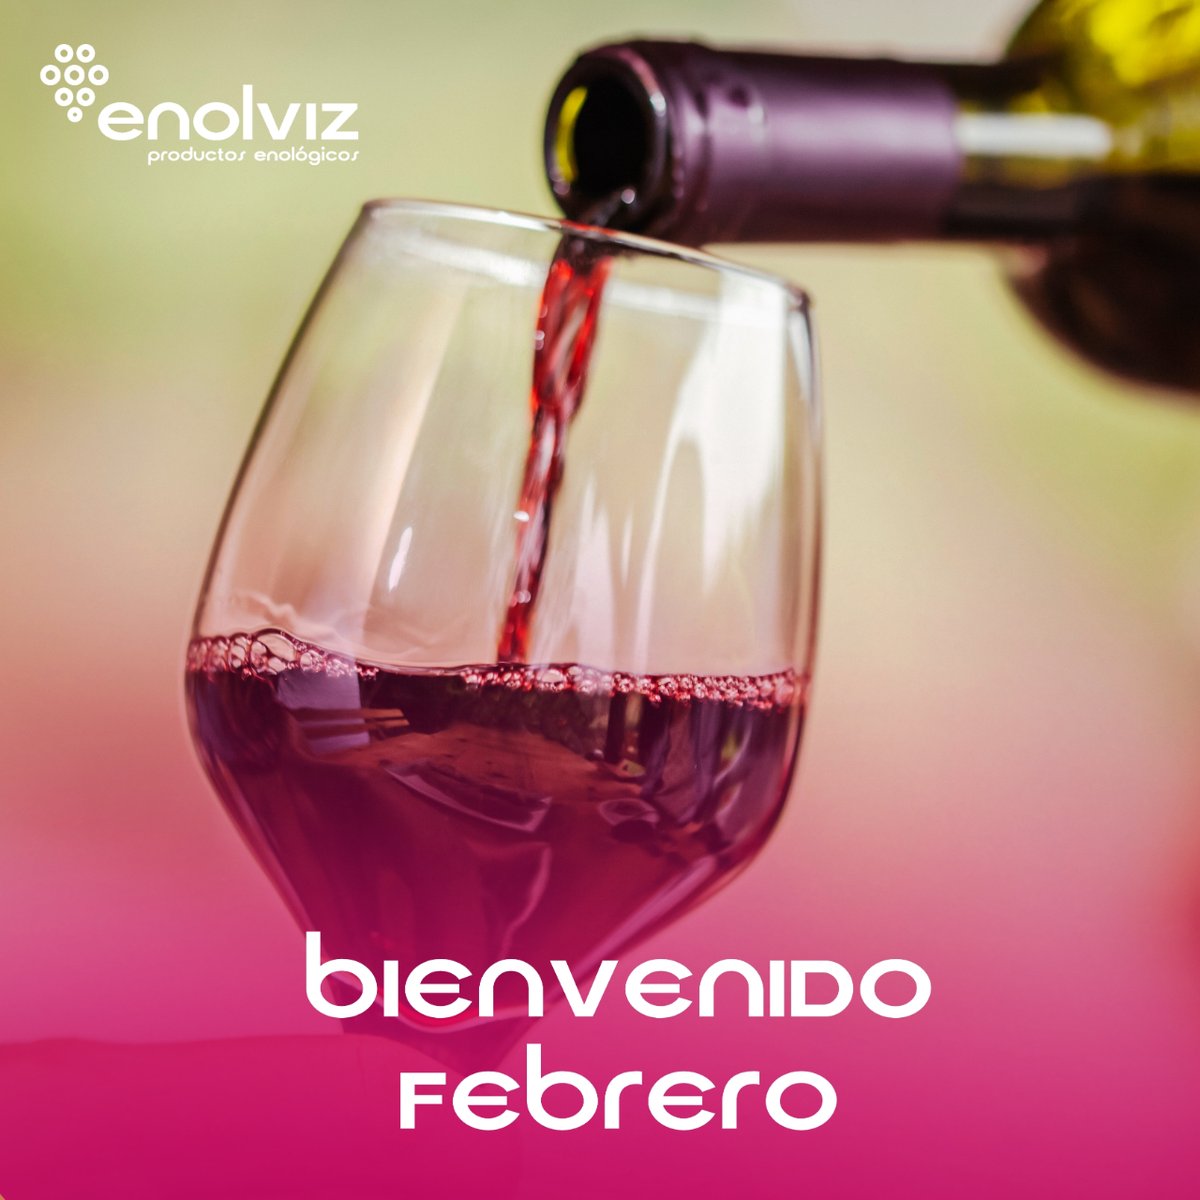 𝗕𝗜𝗘𝗡𝗩𝗘𝗡𝗜𝗗𝗢 𝗙𝗘𝗕𝗥𝗘𝗥𝗢 ✨

Por un febrero lleno de nuevas oportunidades y momentos excepcionales, desde 𝗘𝗻𝗼𝗹𝘃𝗶𝘇, donde cada gota de vino es una celebración de excelencia y pasión 🍇🍷

#CulturaDelVino #enolviz #Bodegas #vino #wine